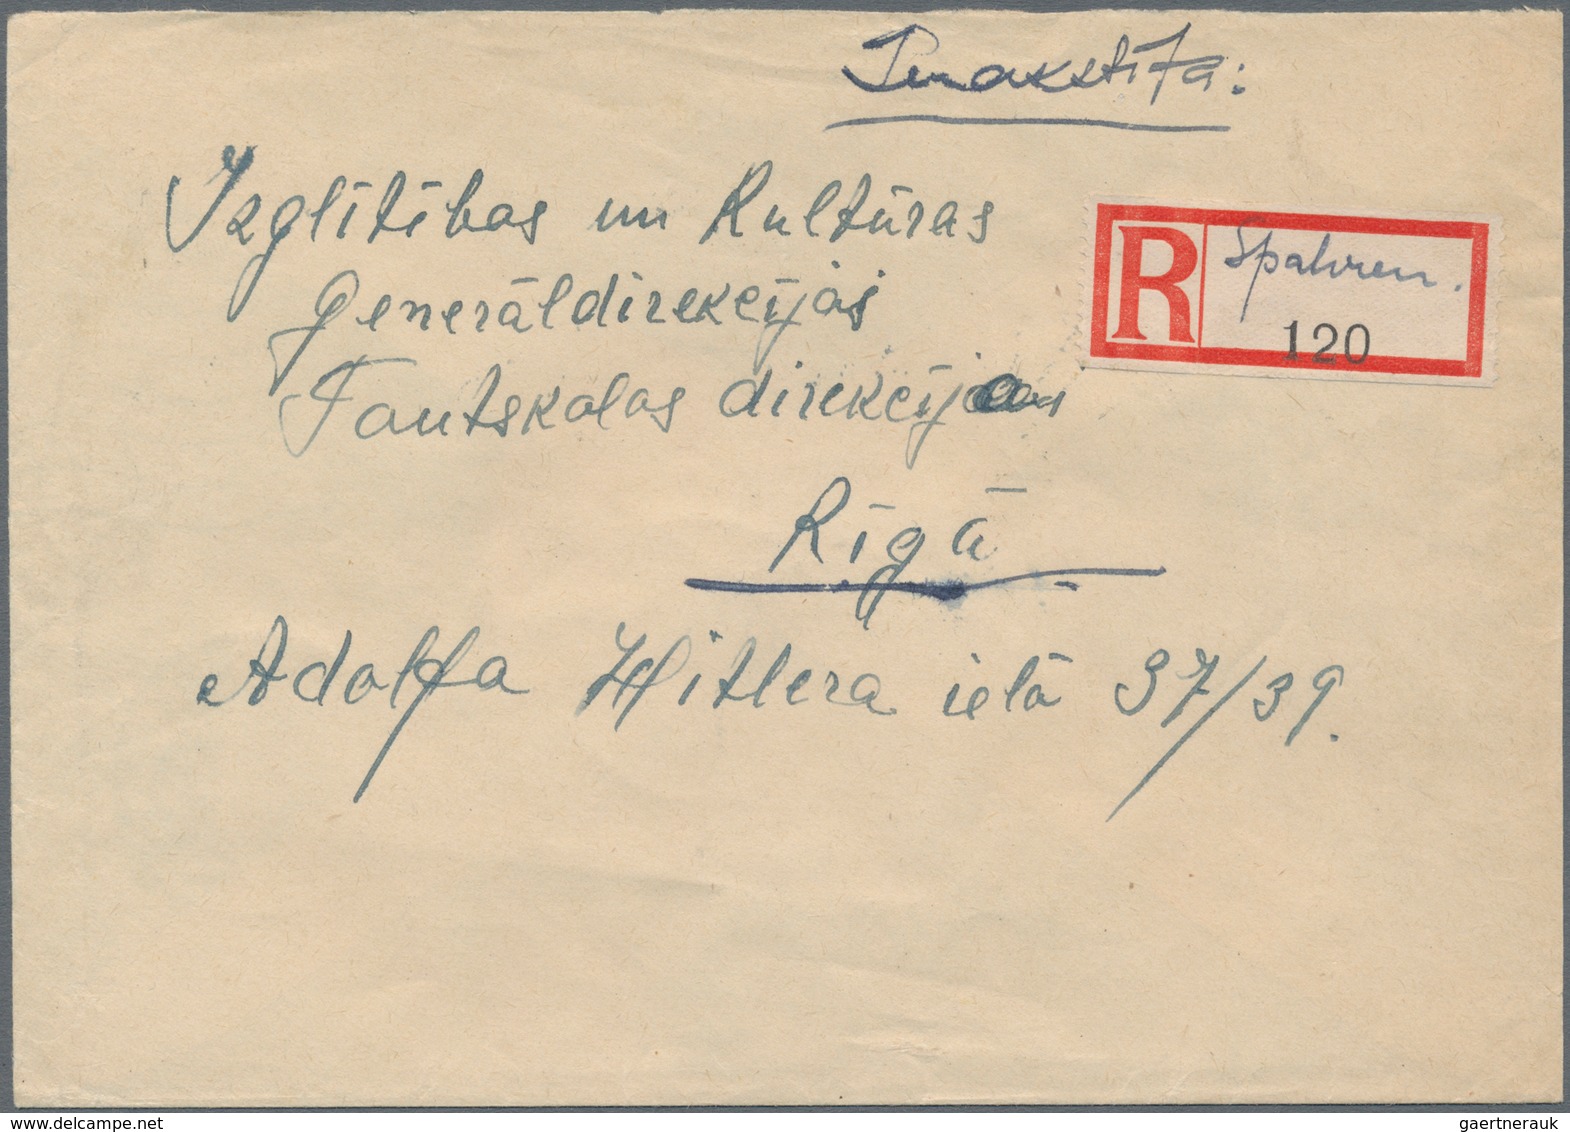 Dt. Besetzung II WK - Ostland: 1943 Einschreiben Mit Provisorischem R-Zettel Von Spalven/Lettland Na - Bezetting 1938-45